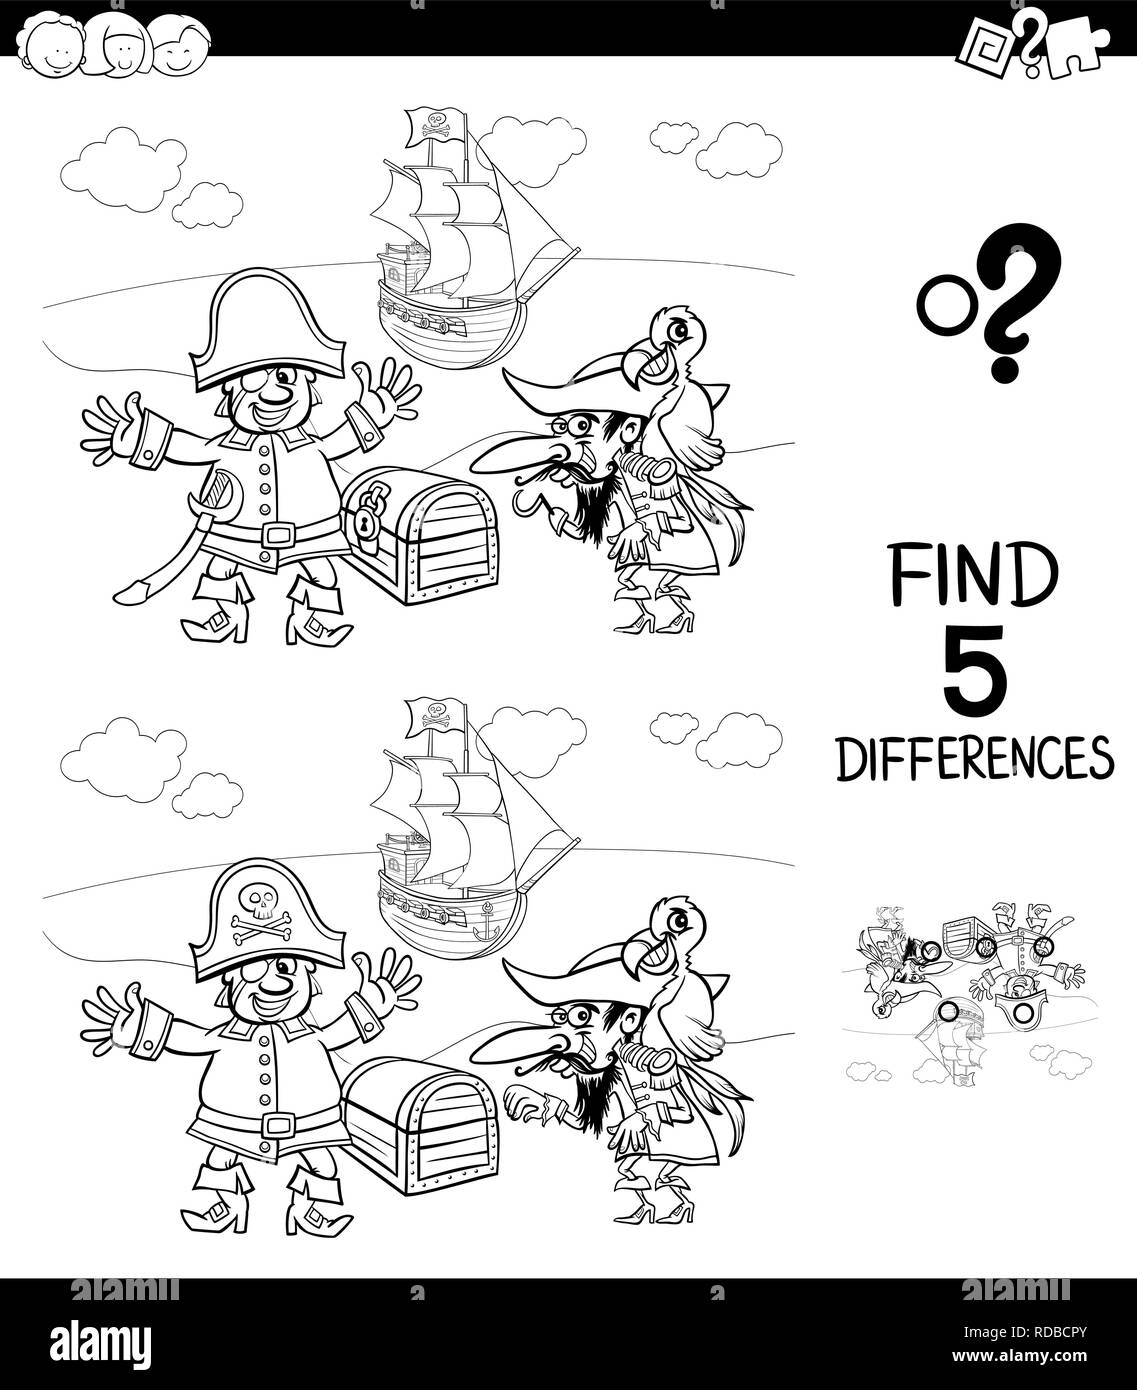 Illustration Cartoon noir et blanc de trouver cinq différences entre les photos, jeu éducatif pour les enfants ayant des caractères Pirate Coloring Book Illustration de Vecteur